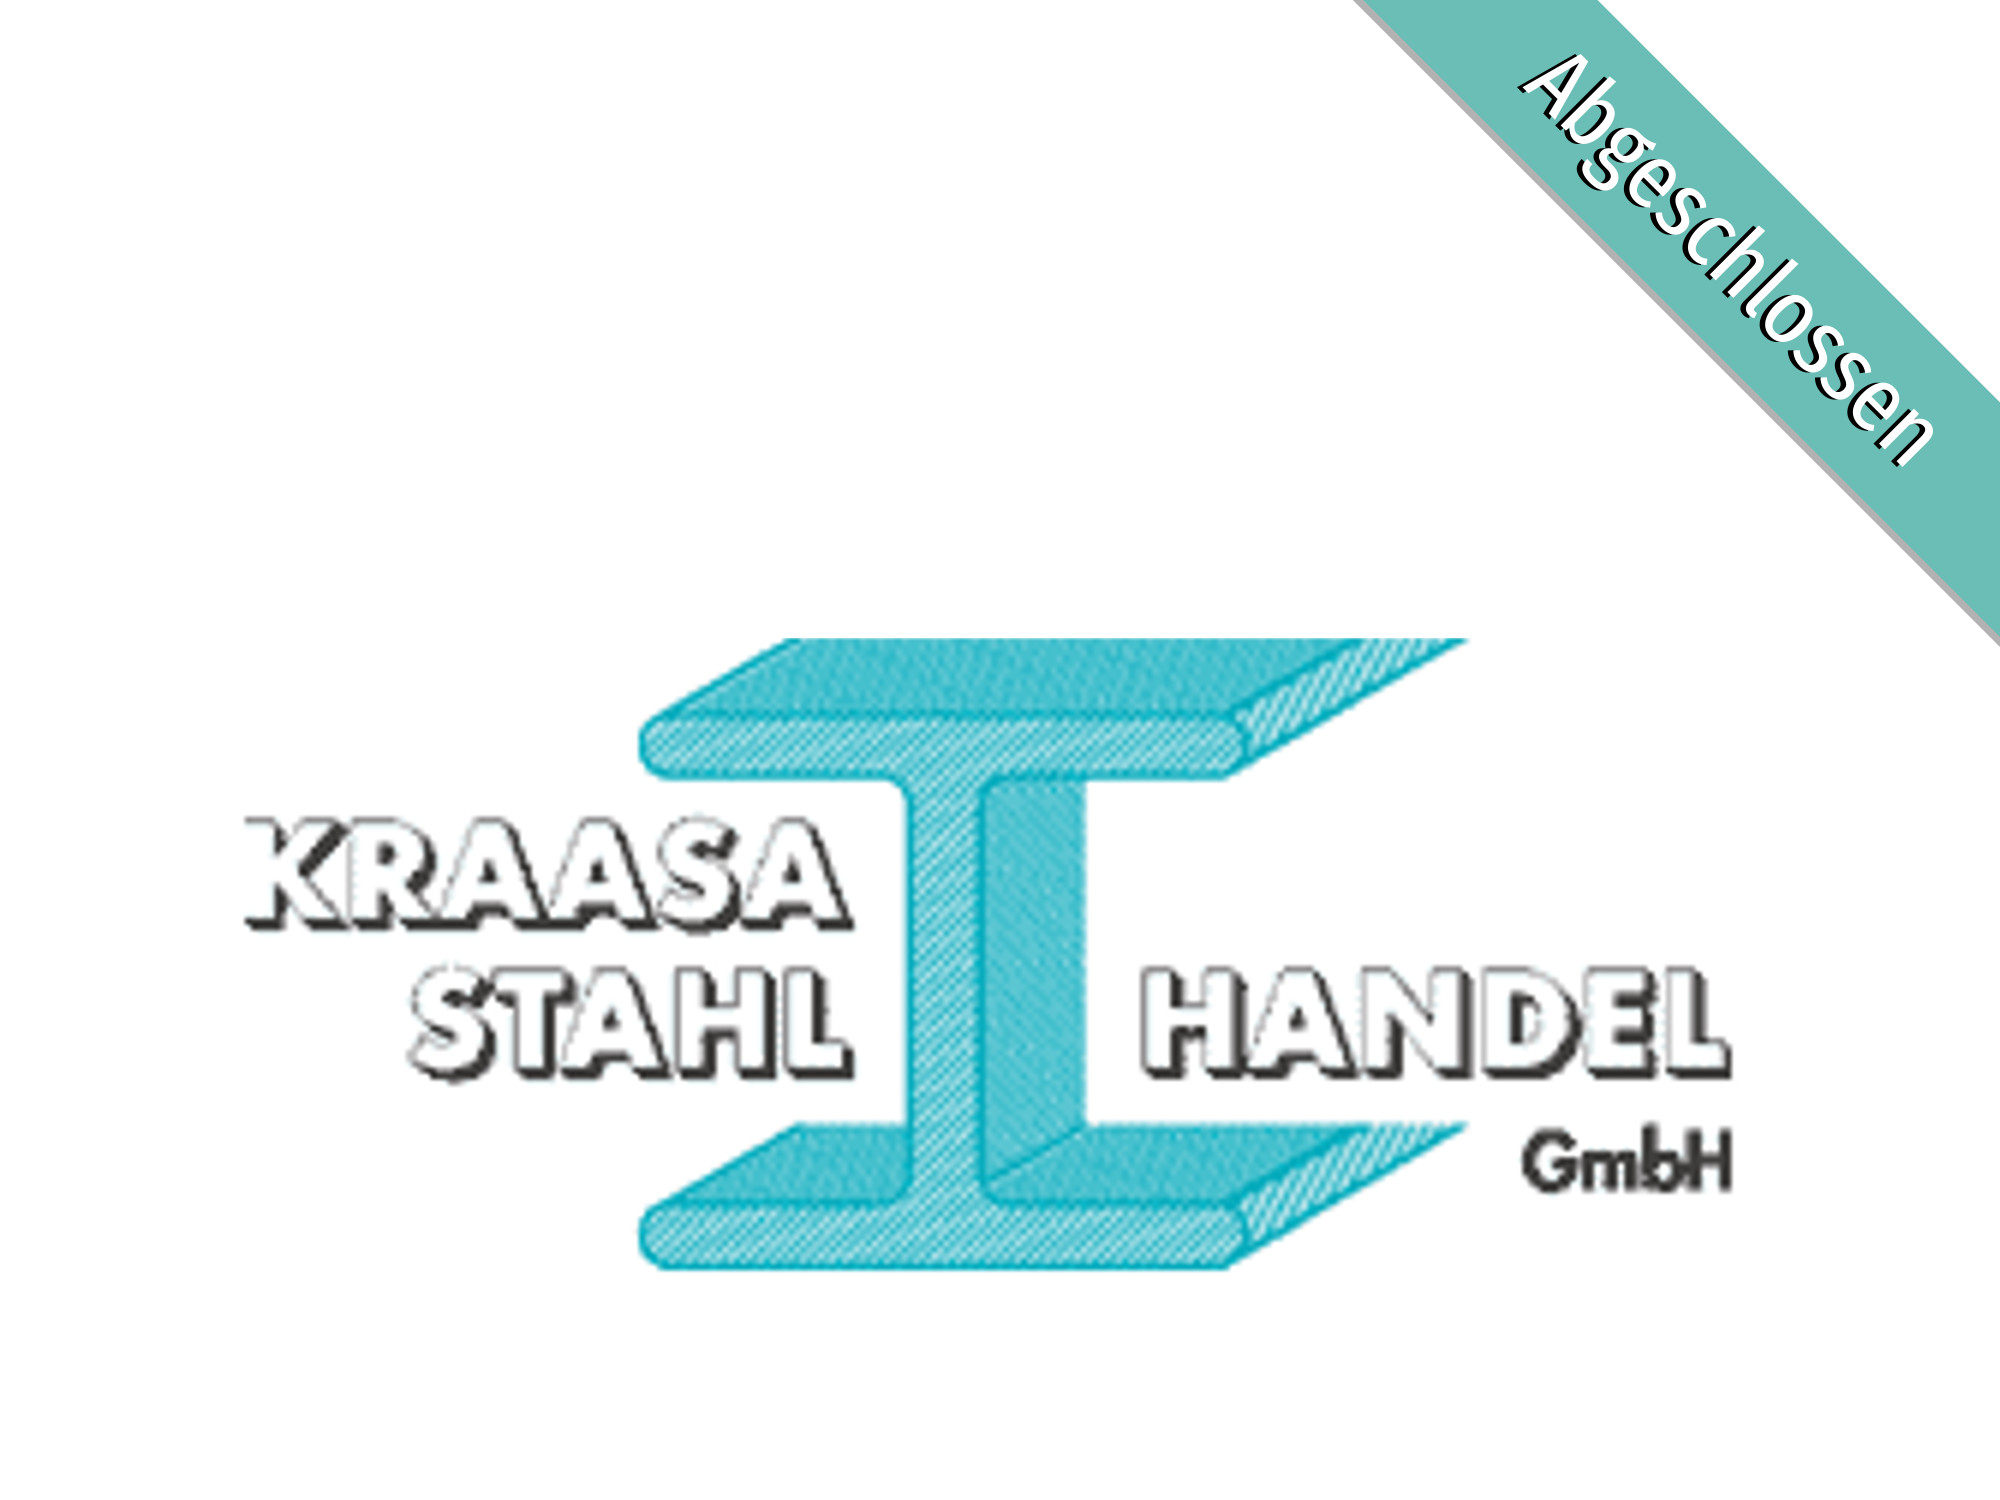 Kraasa Stahl - Handels GmbH